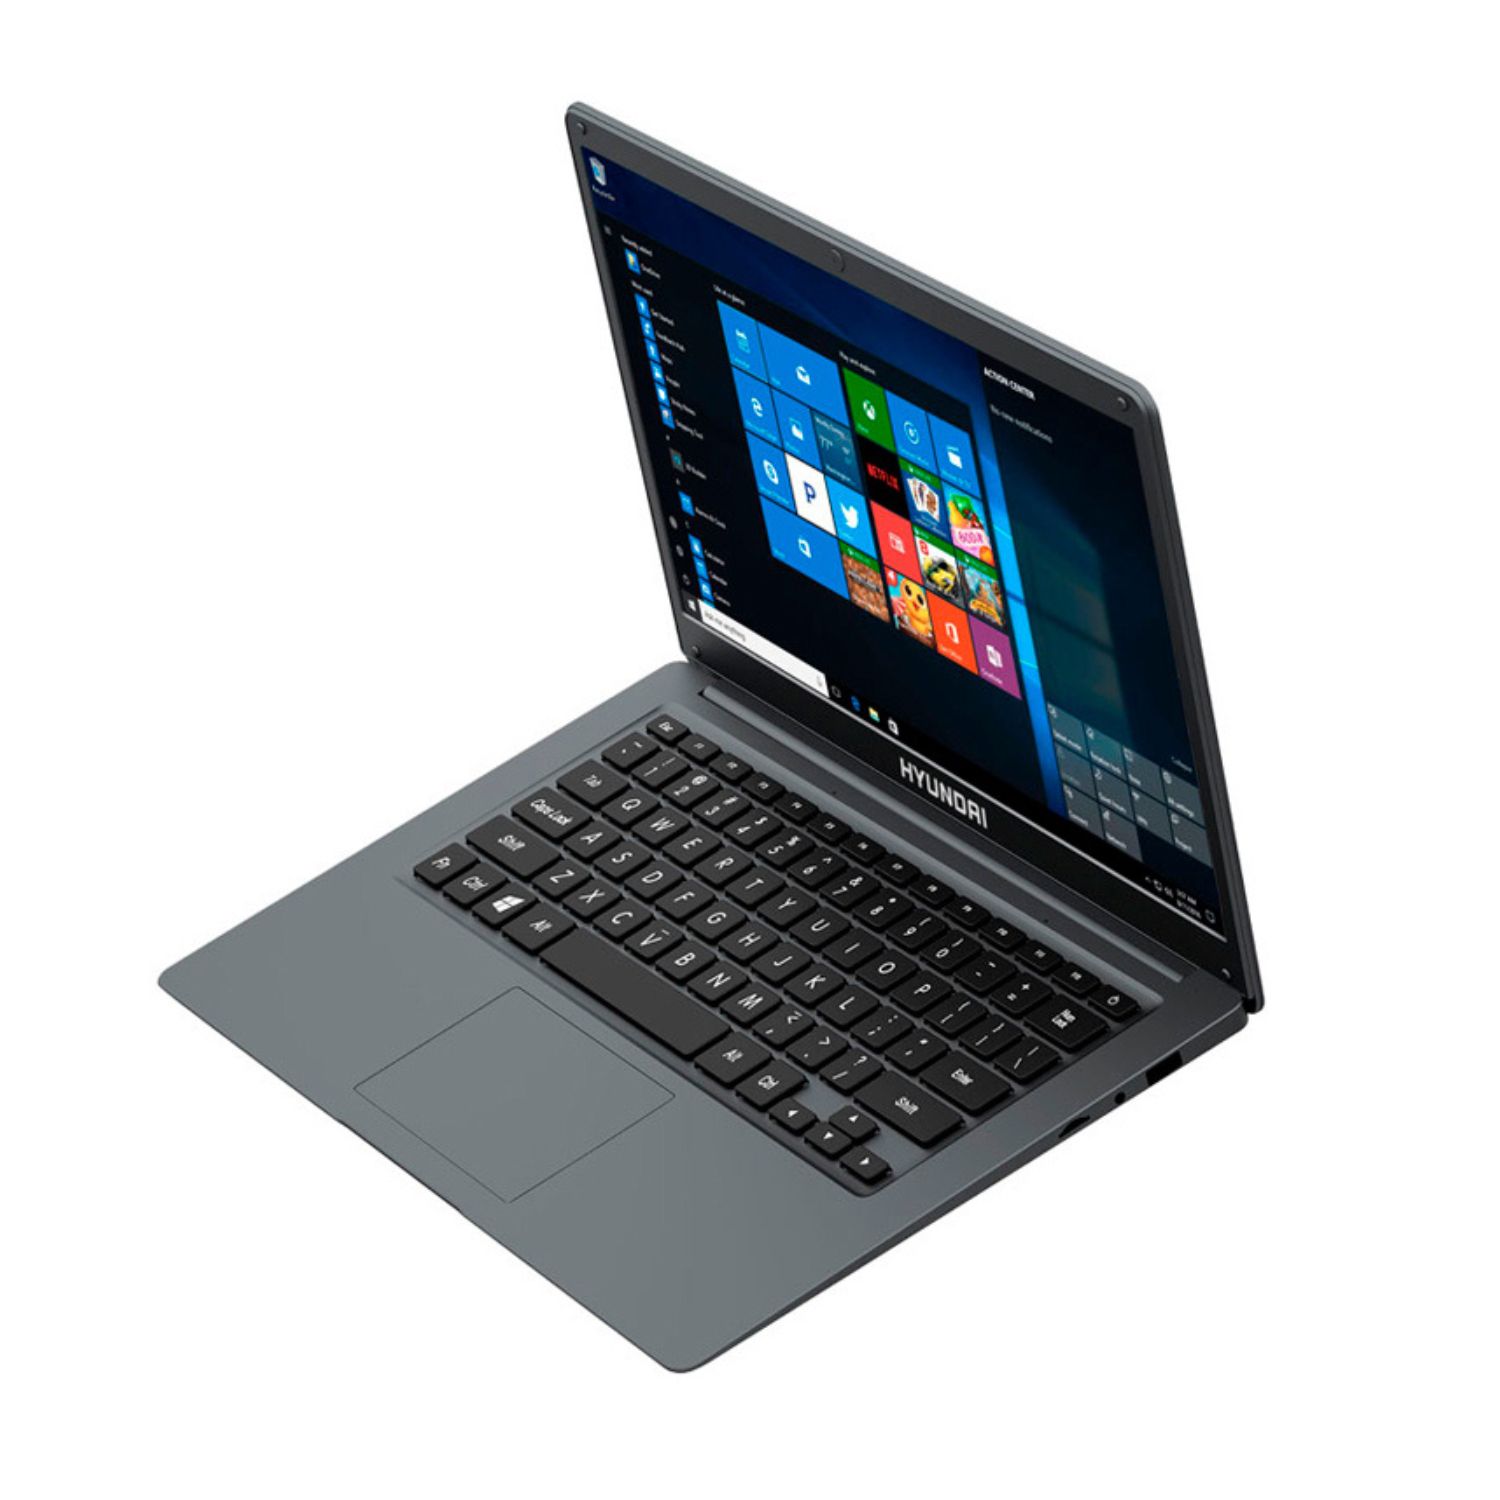 Laptop Hyundai Hybook 14.1" Hd Ips Intel Celeron N4020 4gb 128gb W10